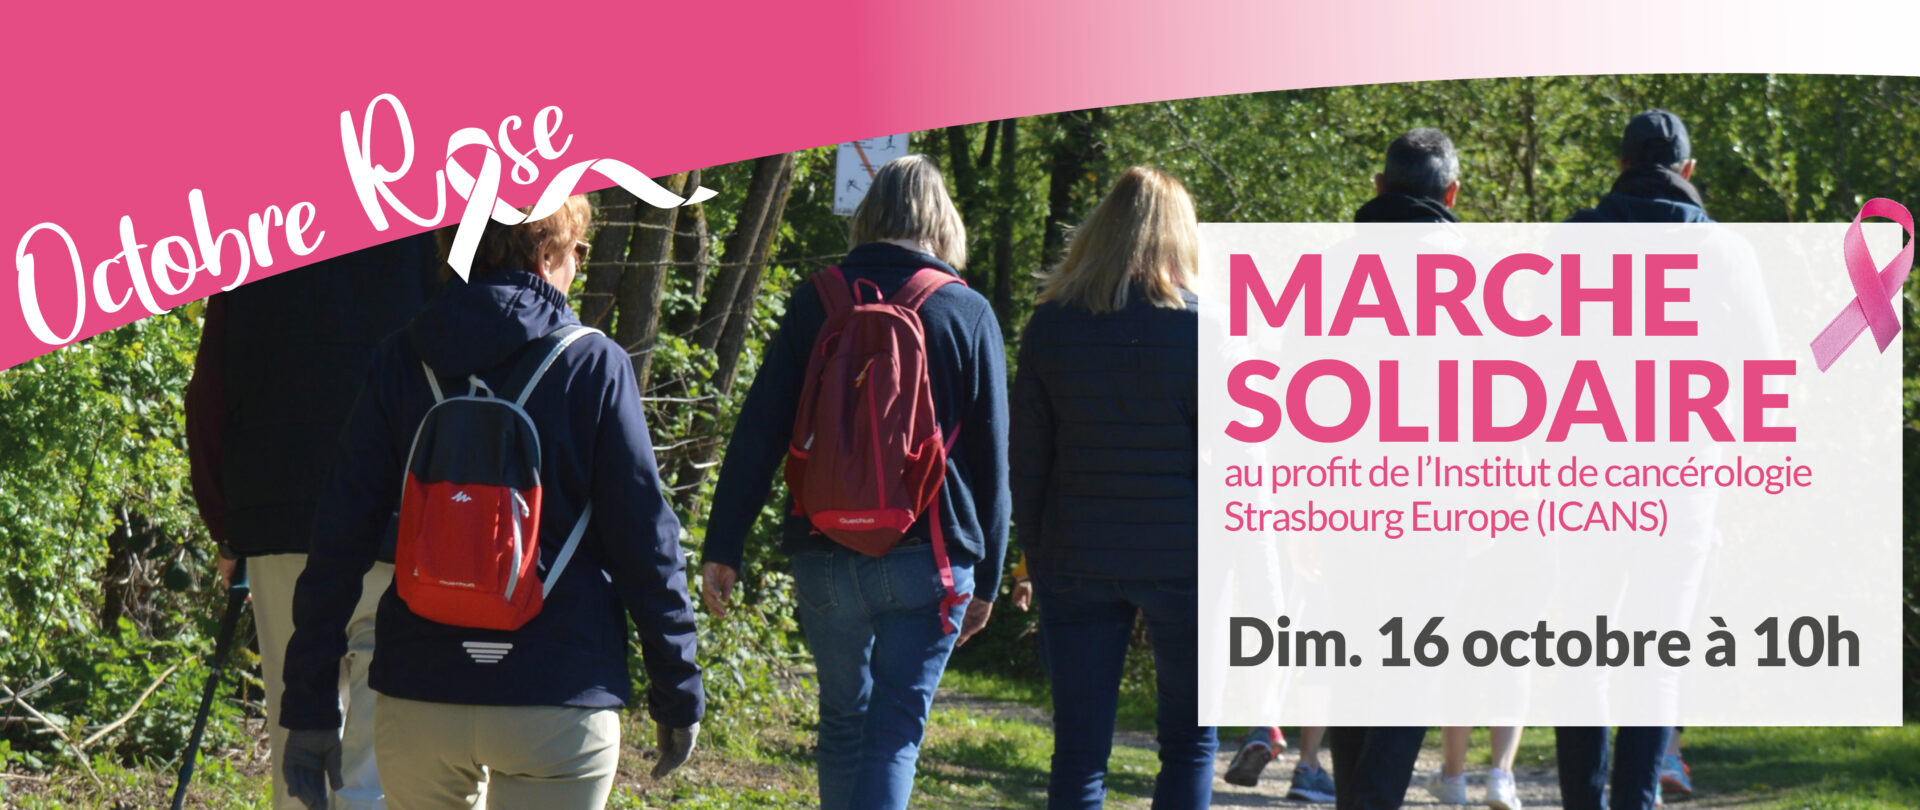 Octobre Rose : participez à la Marche solidaire à Lingolsheim !